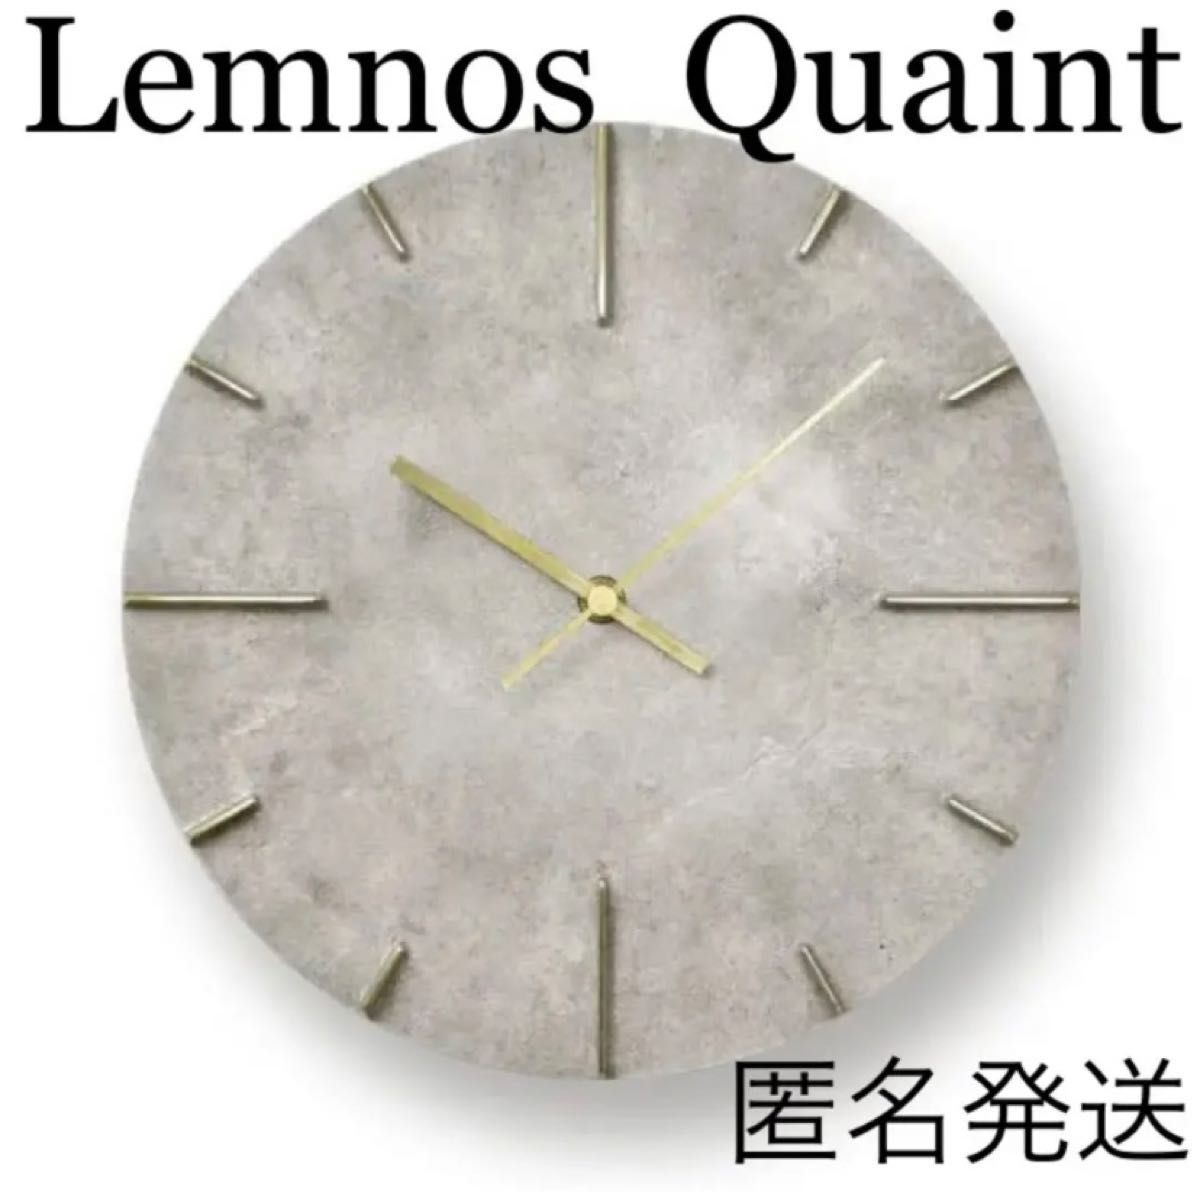 レムノス 掛け時計 クエィント Lemnos Quaint 斑紋純銀 高級